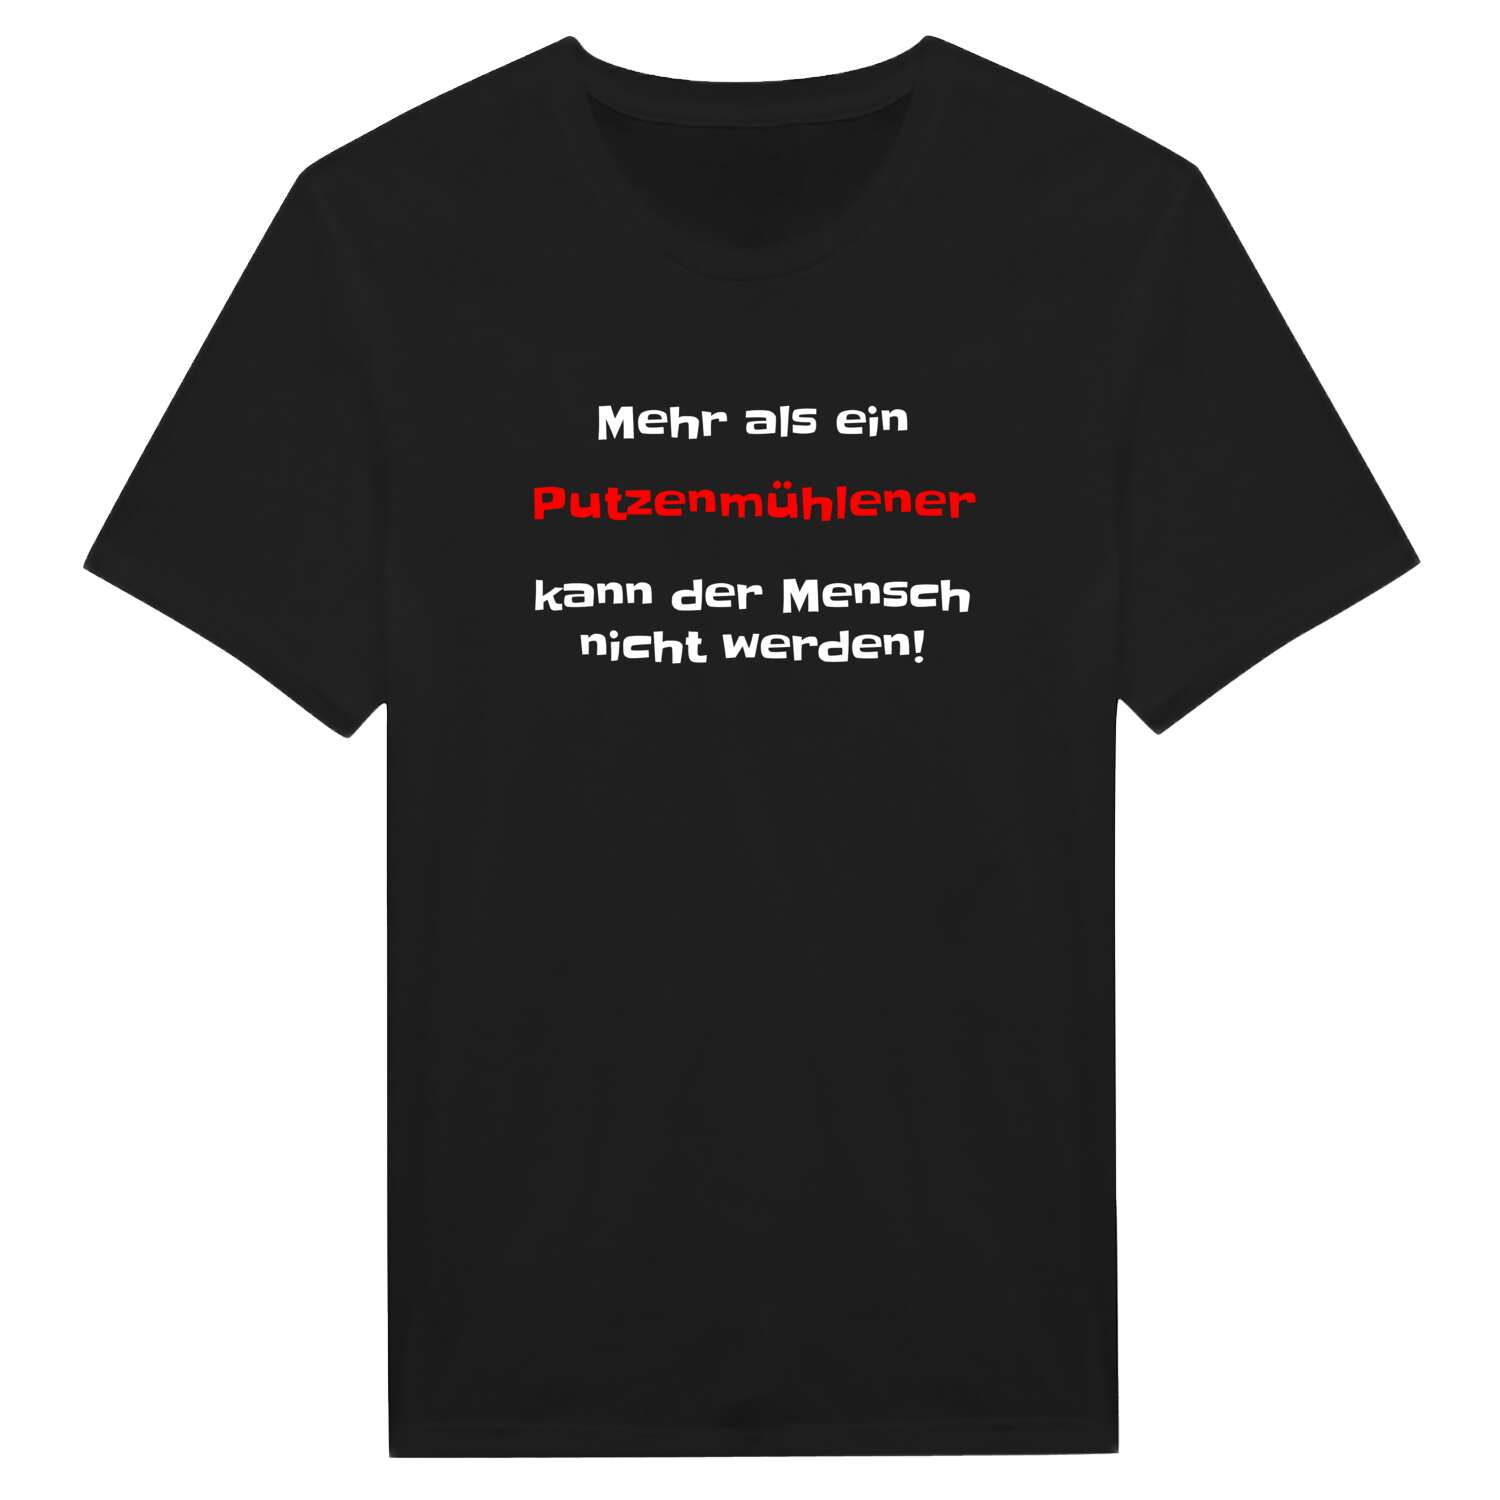 Putzenmühle T-Shirt »Mehr als ein«